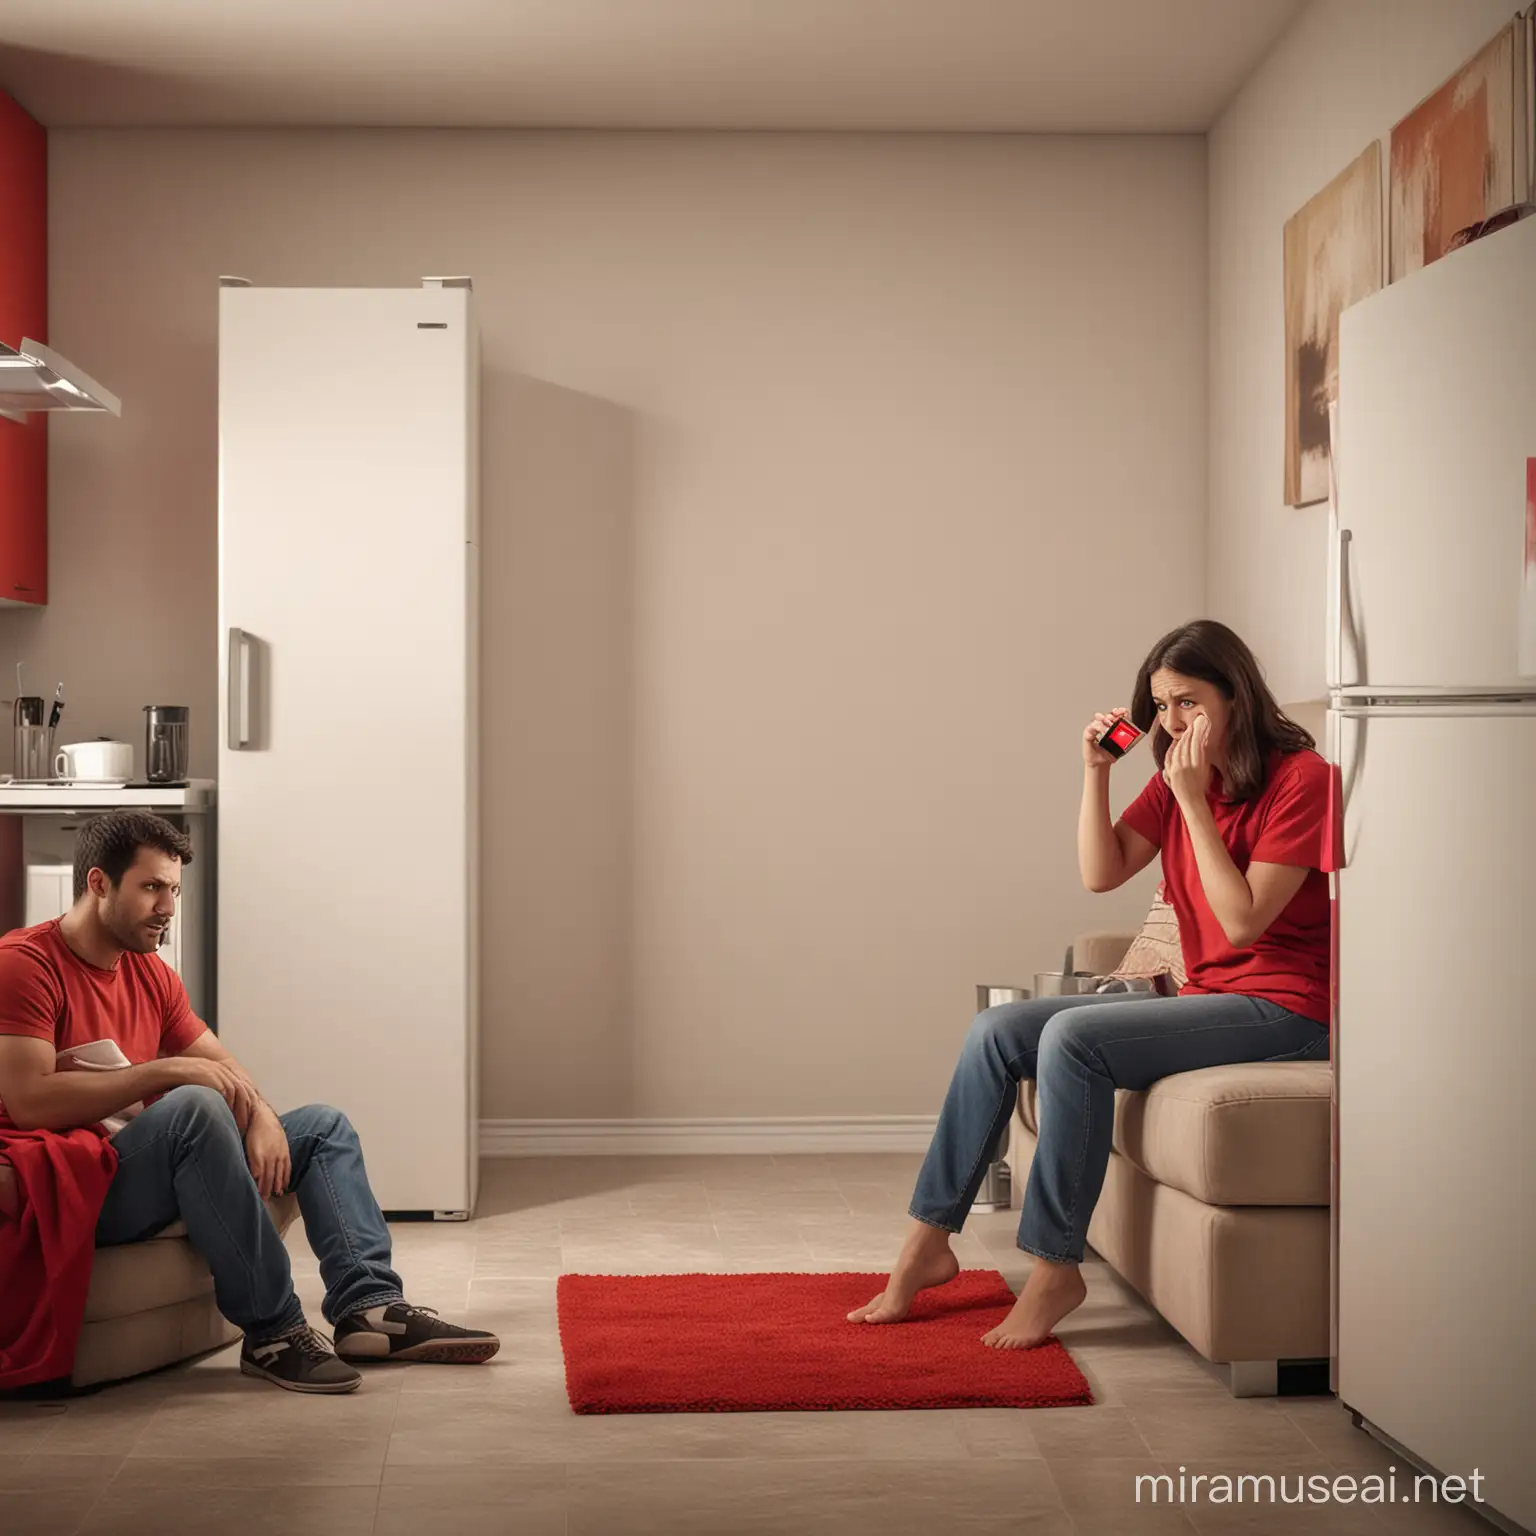 Uma mulher sentada em um sofá, segurando um celular com a tela vermelha, em um ambiente doméstico. Atrás dela, um homem com uma reação brava olhando para dentro de uma geladeira vazia,. A imagem deve ser ultra realista, com atenção aos detalhes como expressões faciais, iluminação e textura